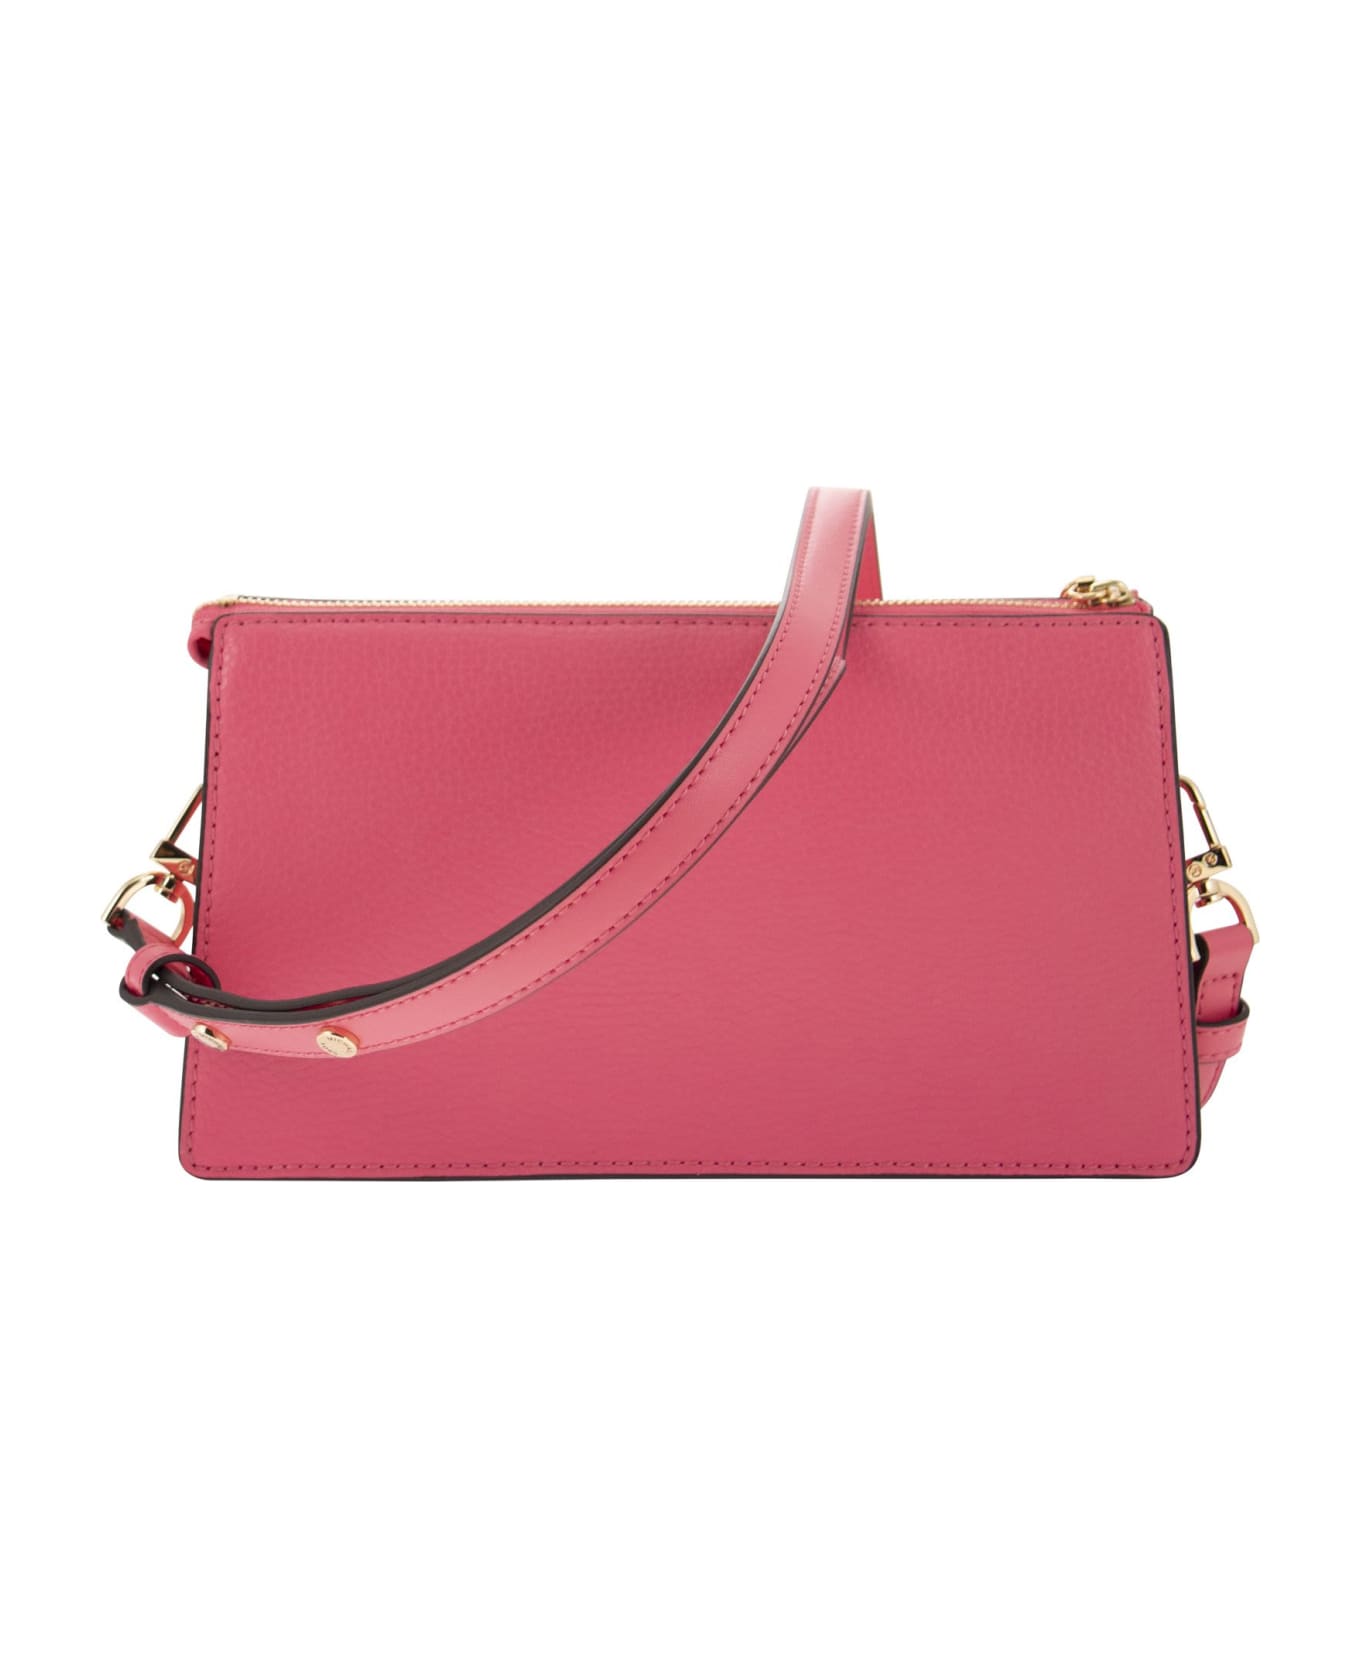 Michael Kors Empire Leather Shoulder Bag - Pink